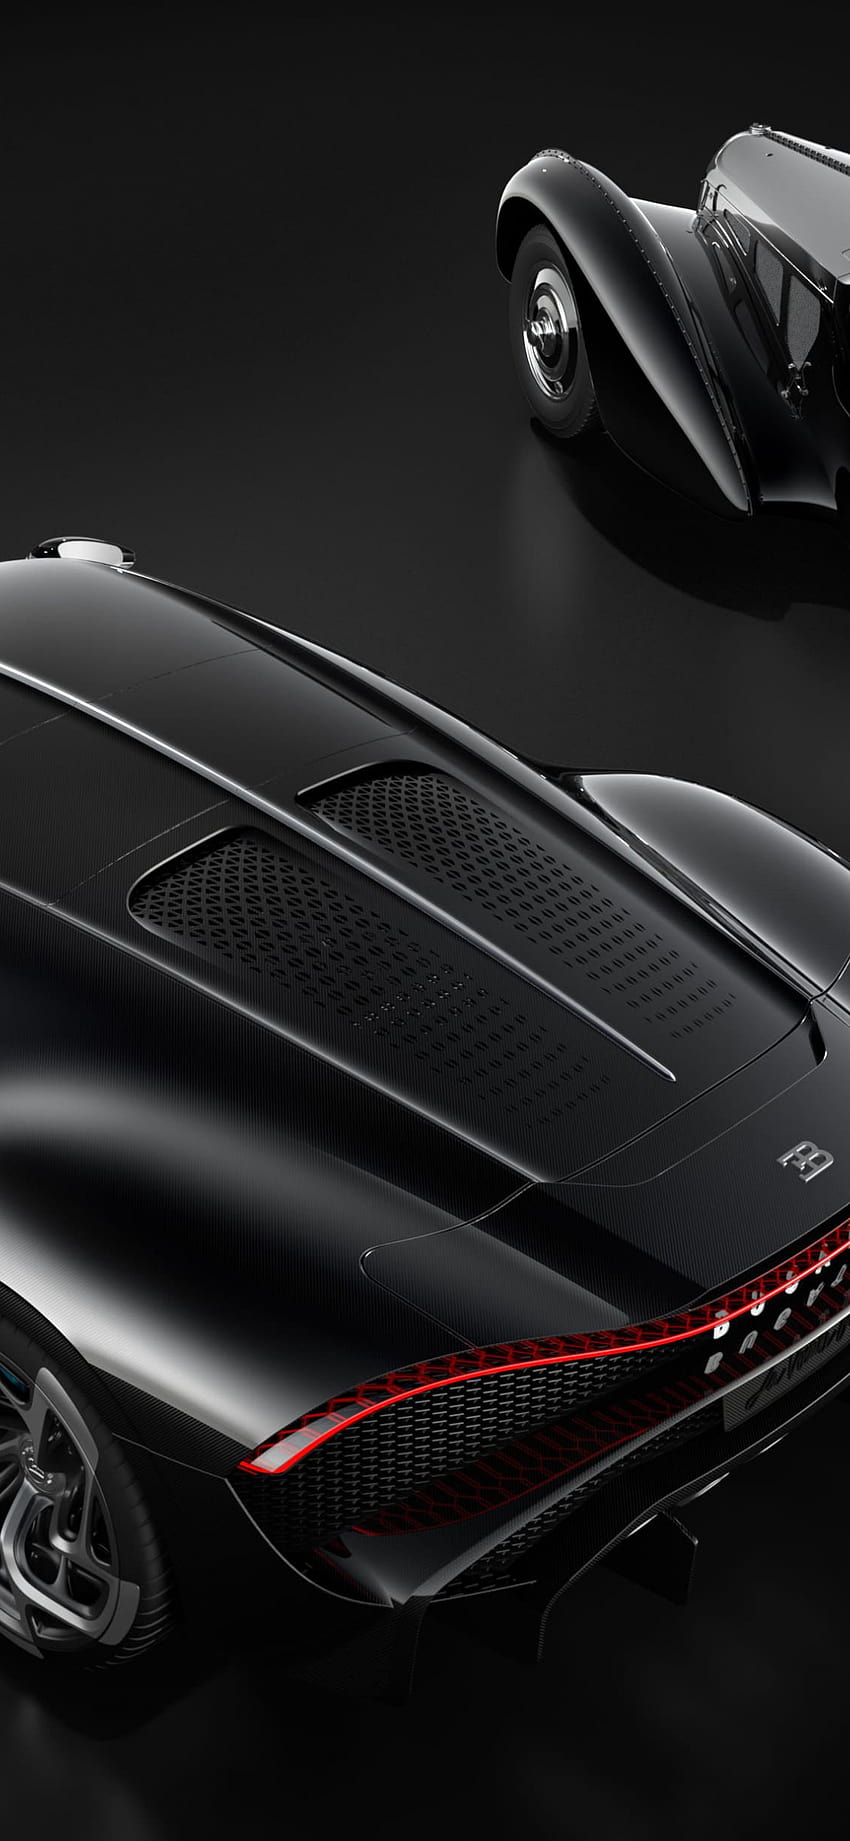 2019 Bugatti La Voiture Noire, 럭셔리 자동차, 4028x2462, , 23d3d523, bugatti 스마트폰 HD 전화 배경 화면